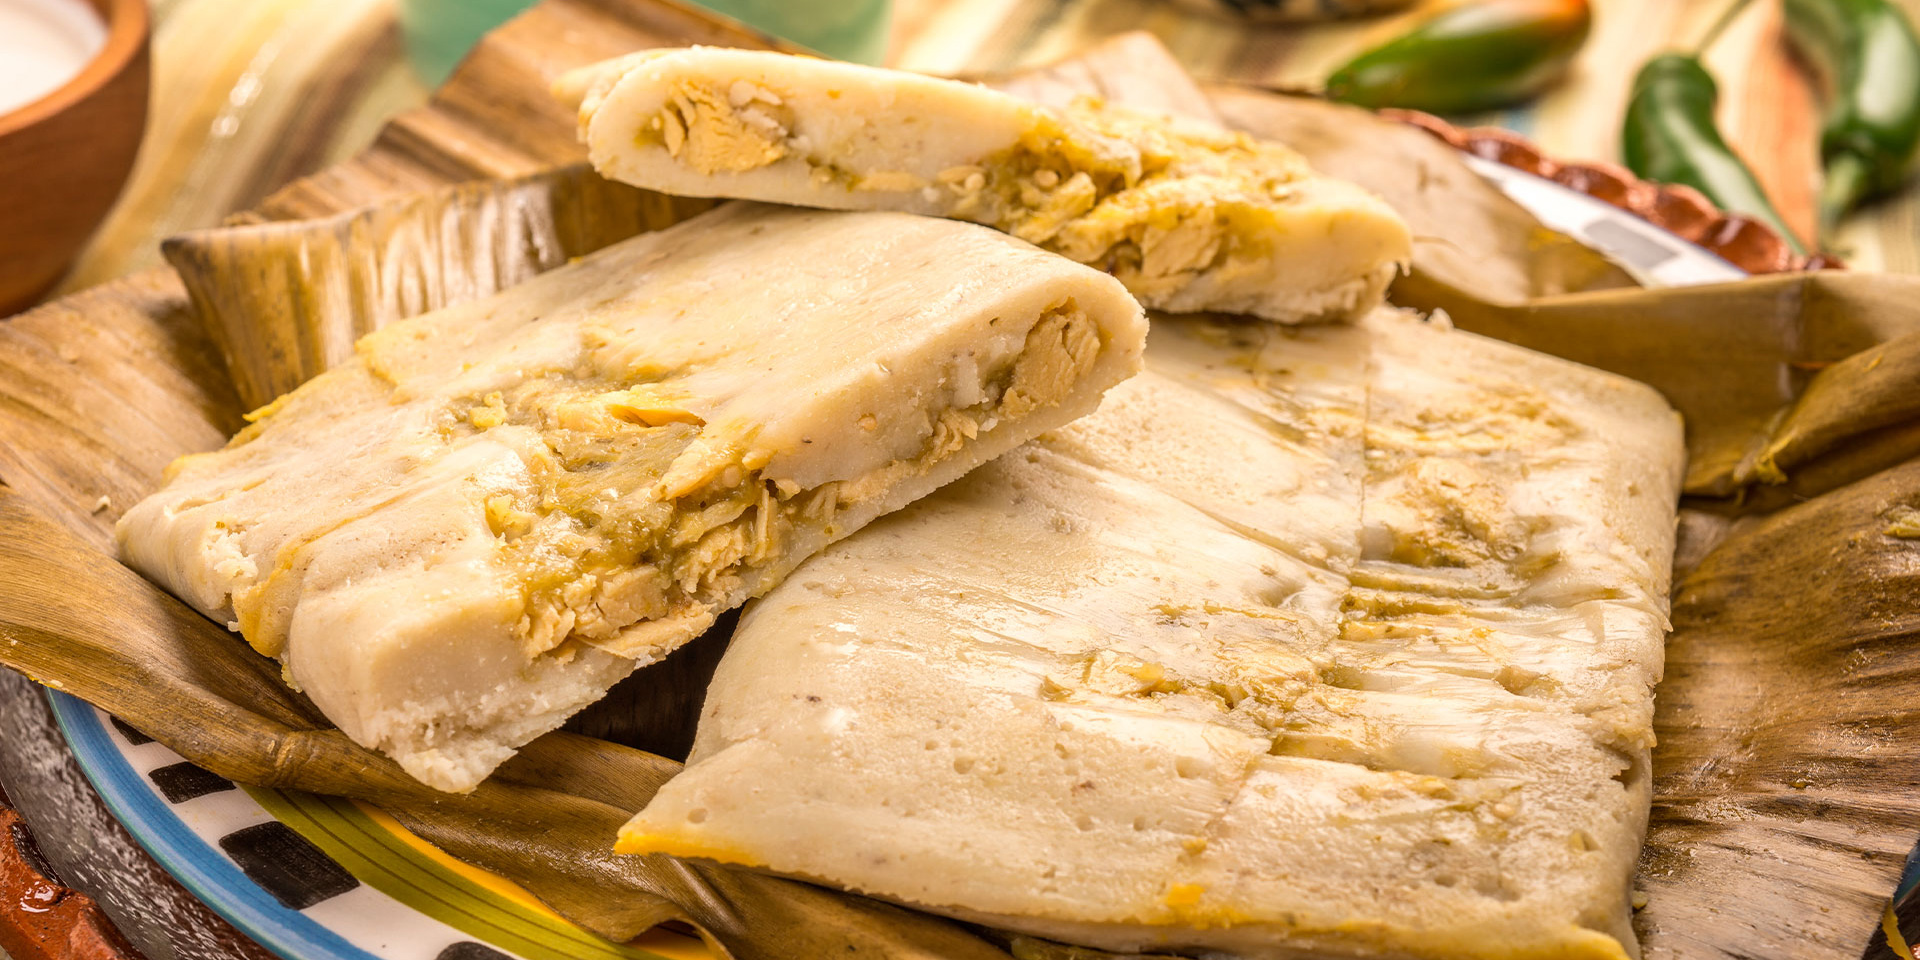 ¿Qué beneficios tiene comer tamales? | El Imparcial de Oaxaca